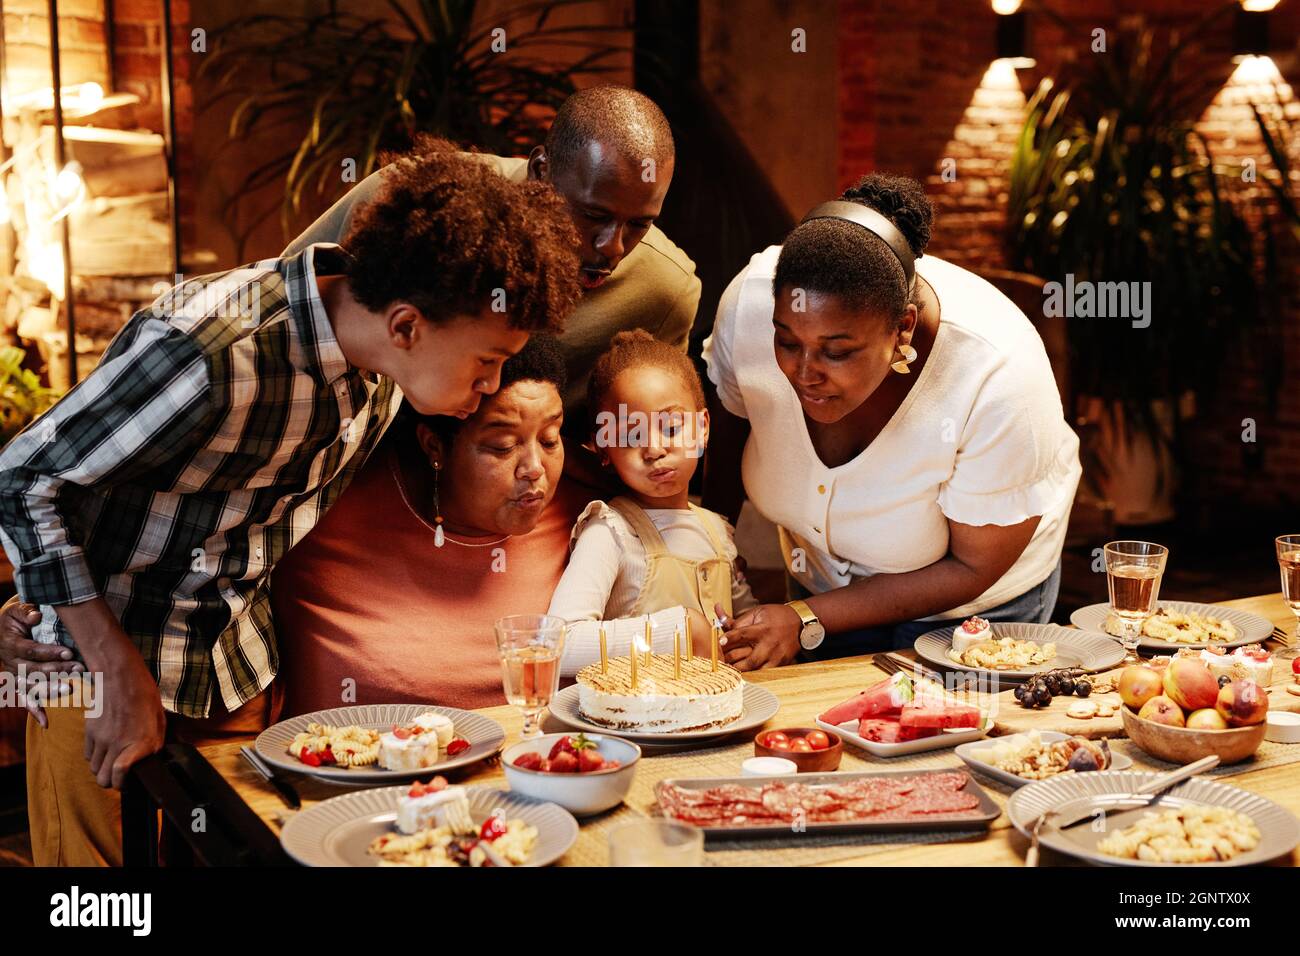 Porträt einer afroamerikanischen Oma, die Kerzen bläst, während sie mit der Familie in gemütlicher Atmosphäre Geburtstag feiert Stockfoto